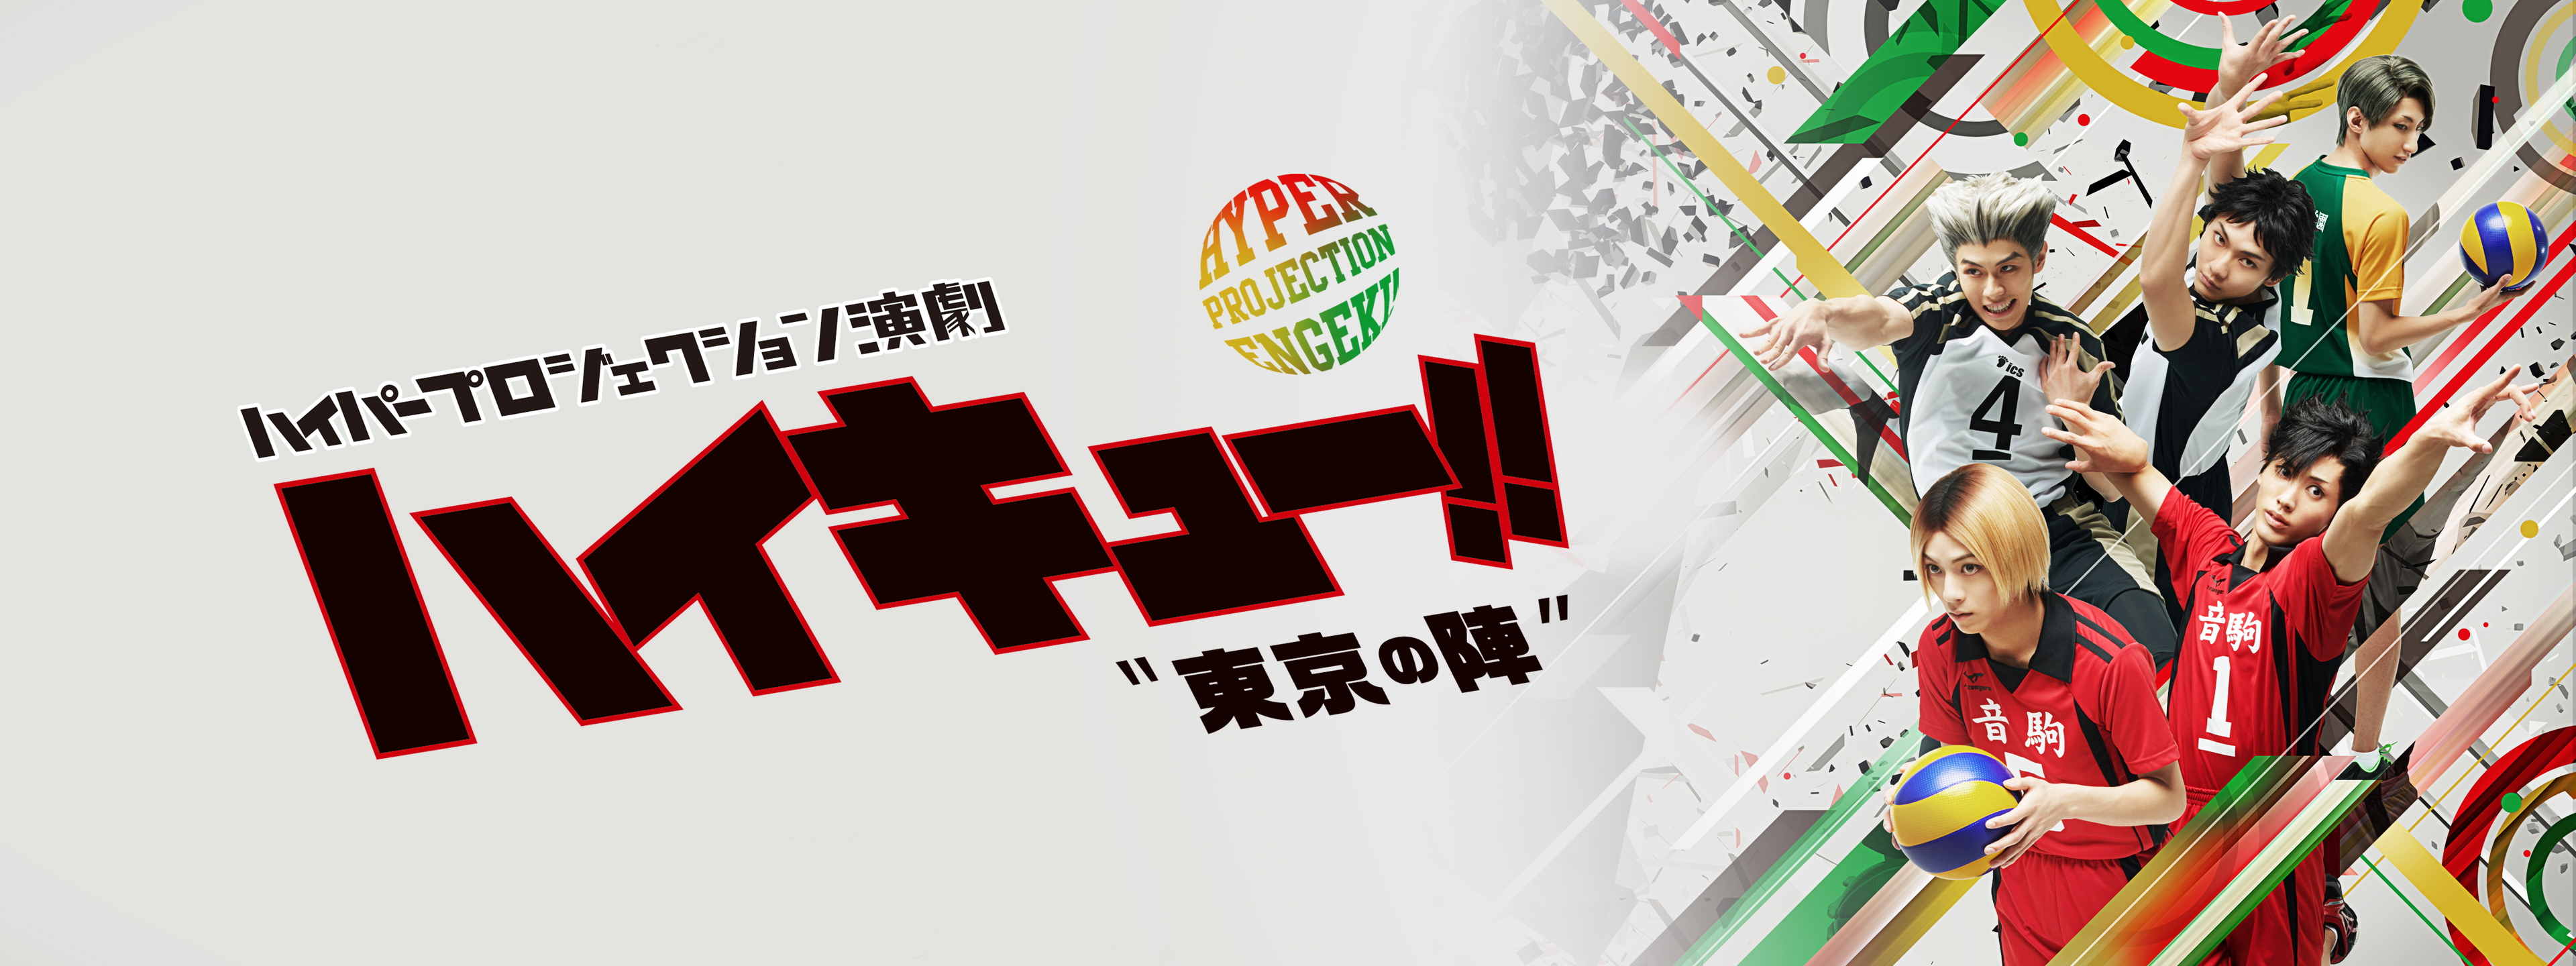 ハイパープロジェクション演劇「ハイキュー!!」“東京の陣” | Hulu 